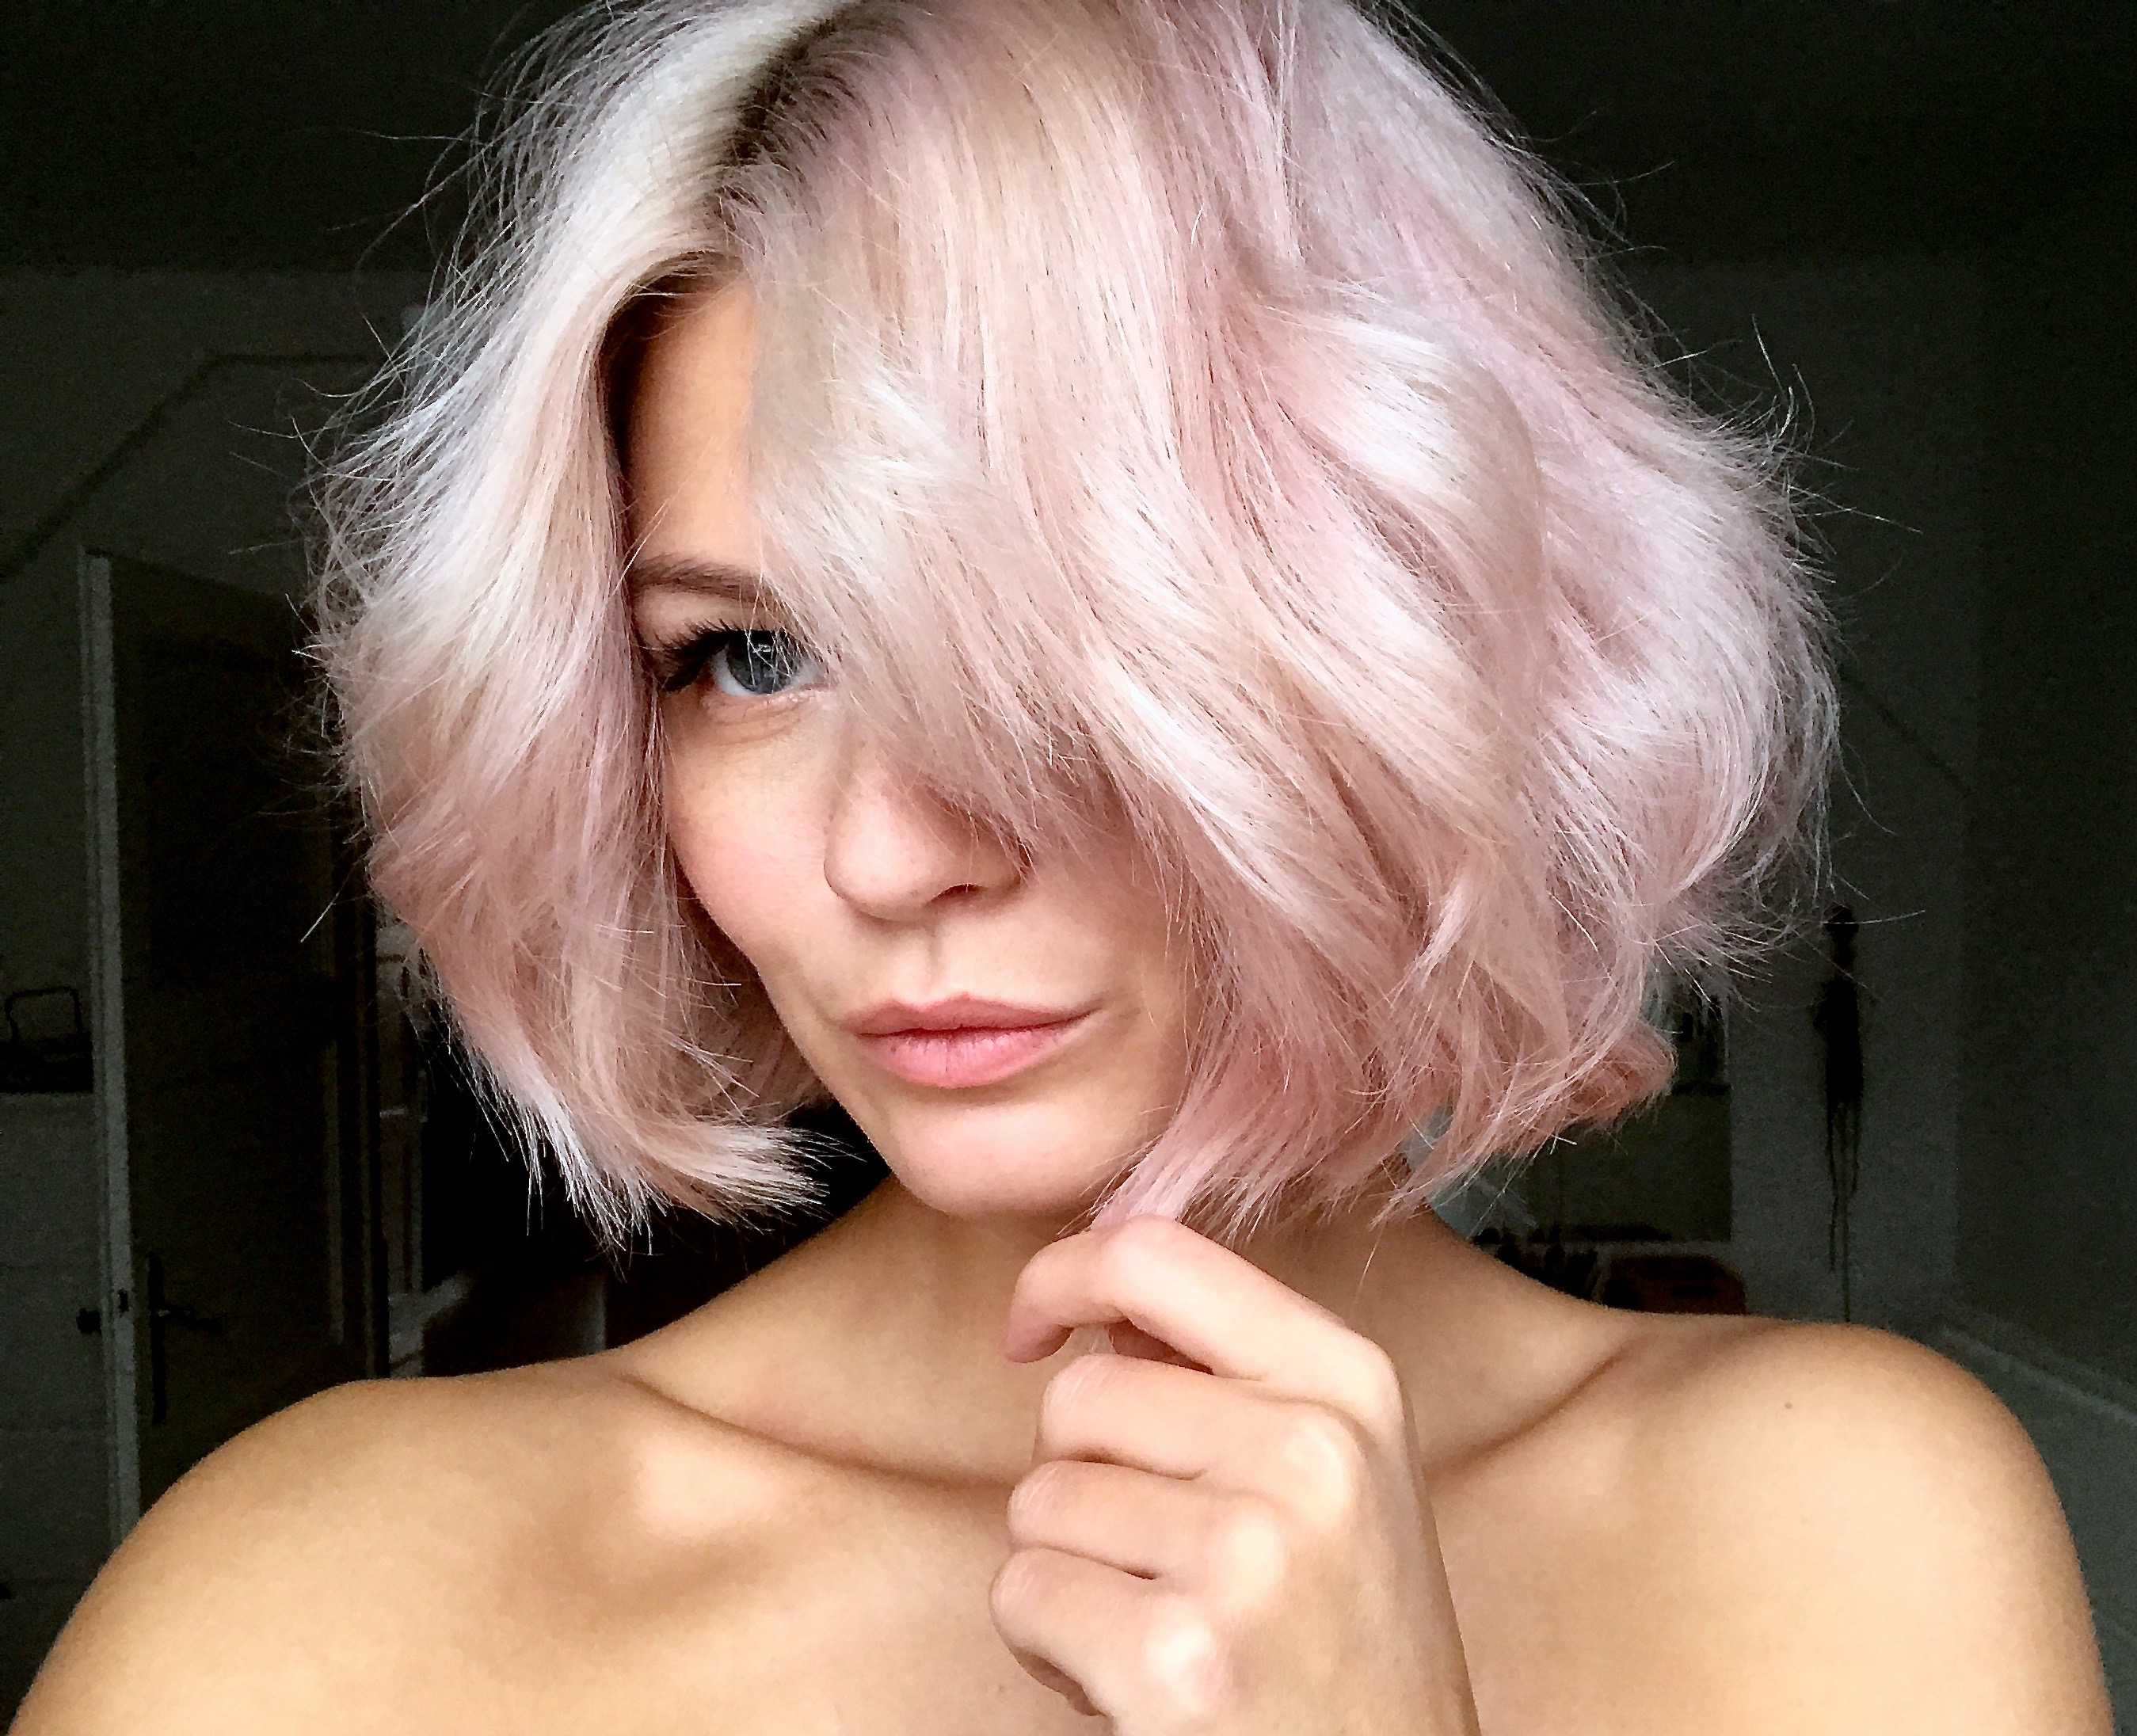 Розовые волосы: новый тренд в окрашивании волос 2021 - beauty hub